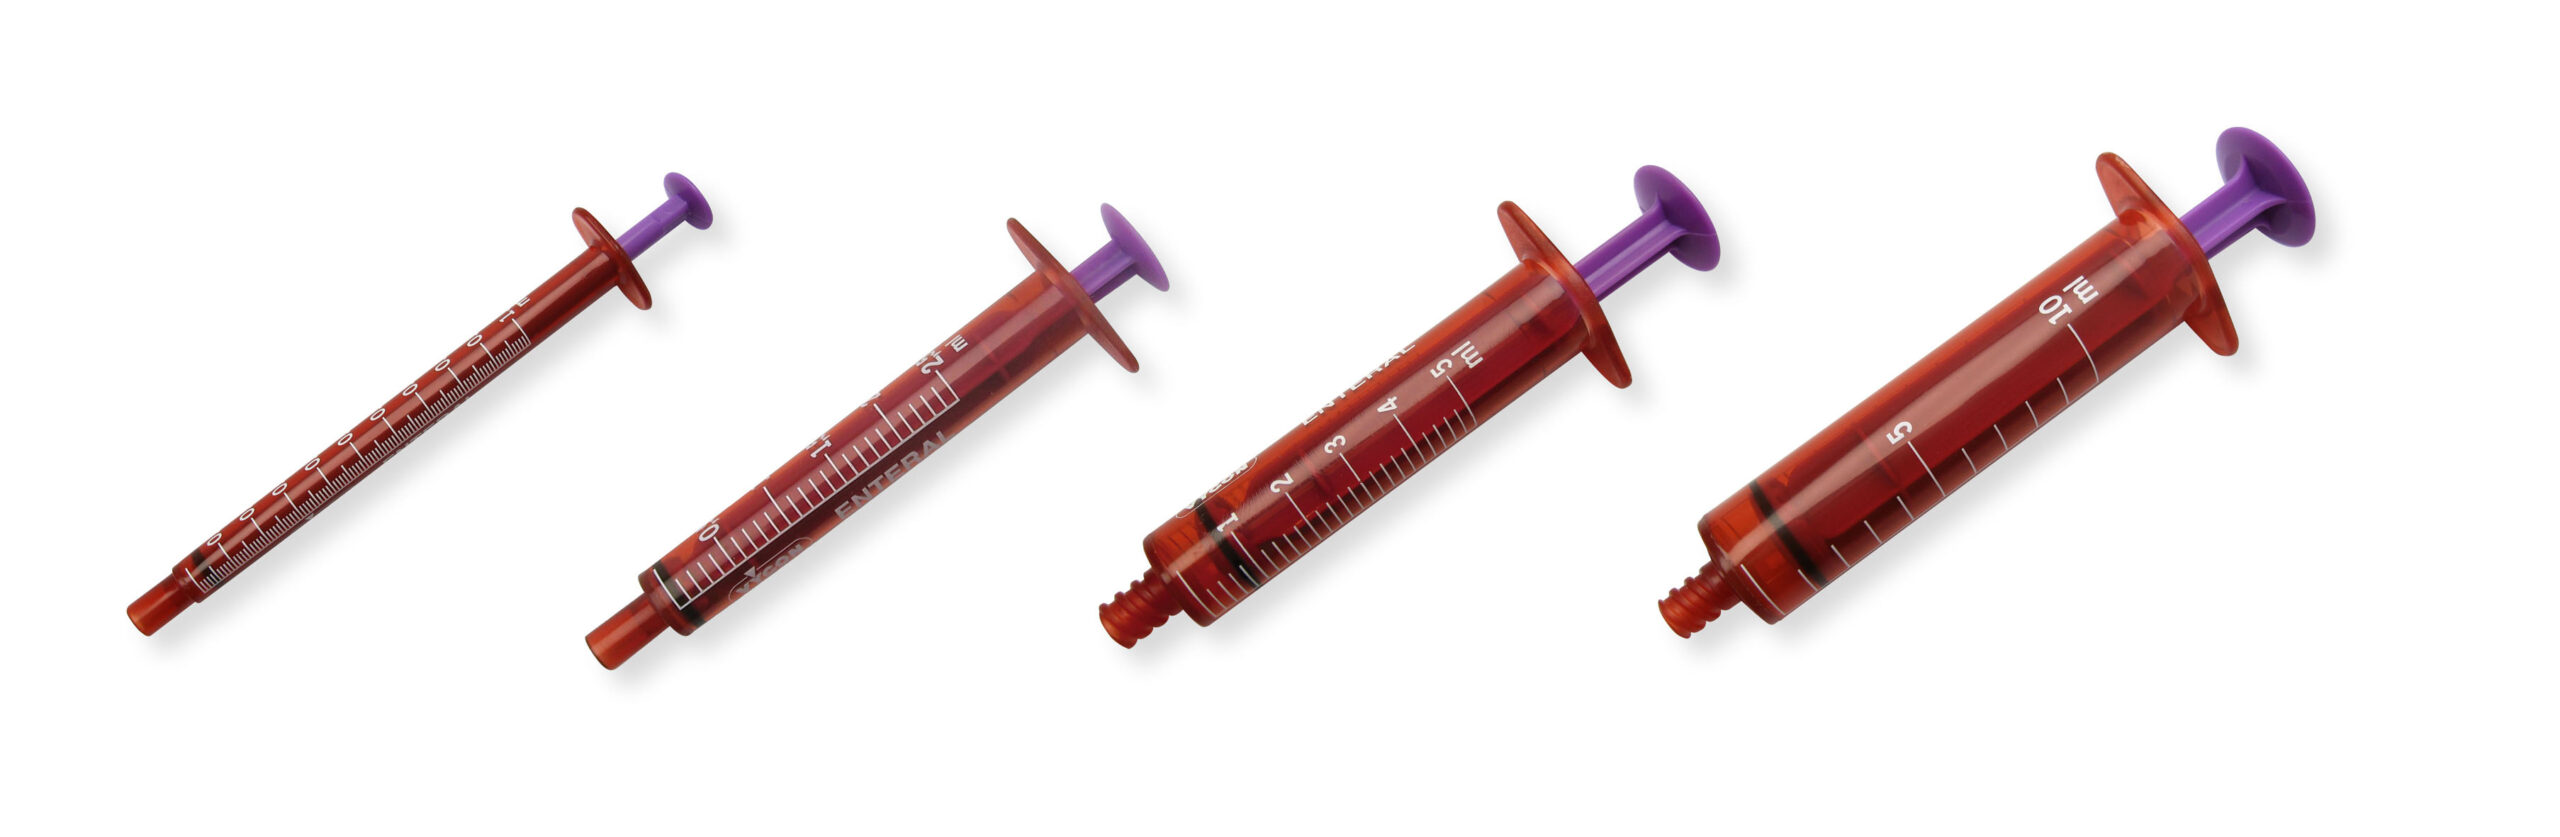 Amber syringe for enteral drug administration